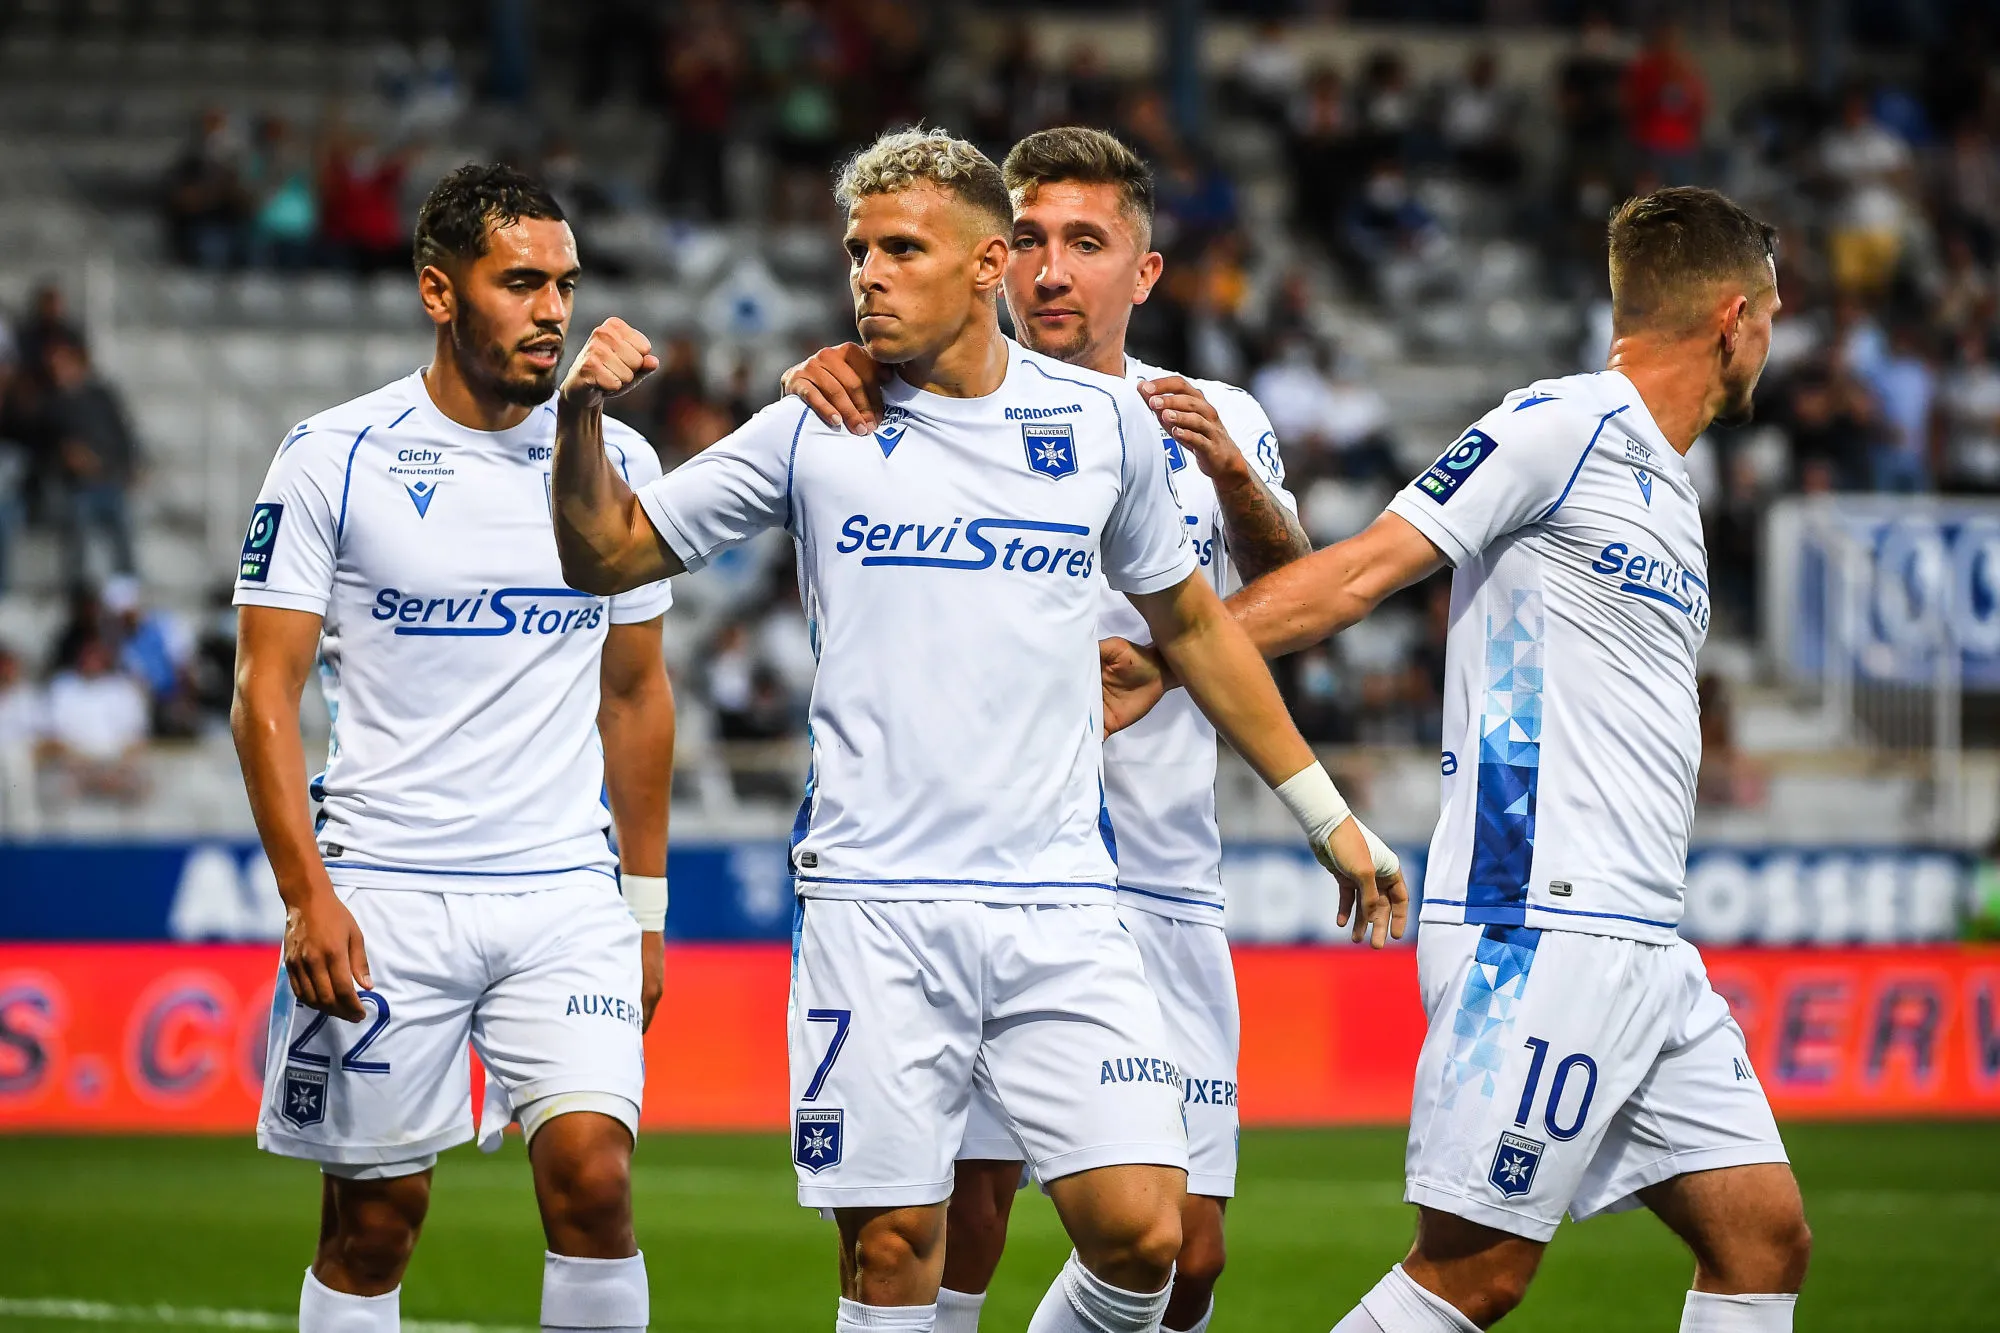 Pronostic Auxerre Ajaccio : Analyse, cotes et prono du match de Ligue 2